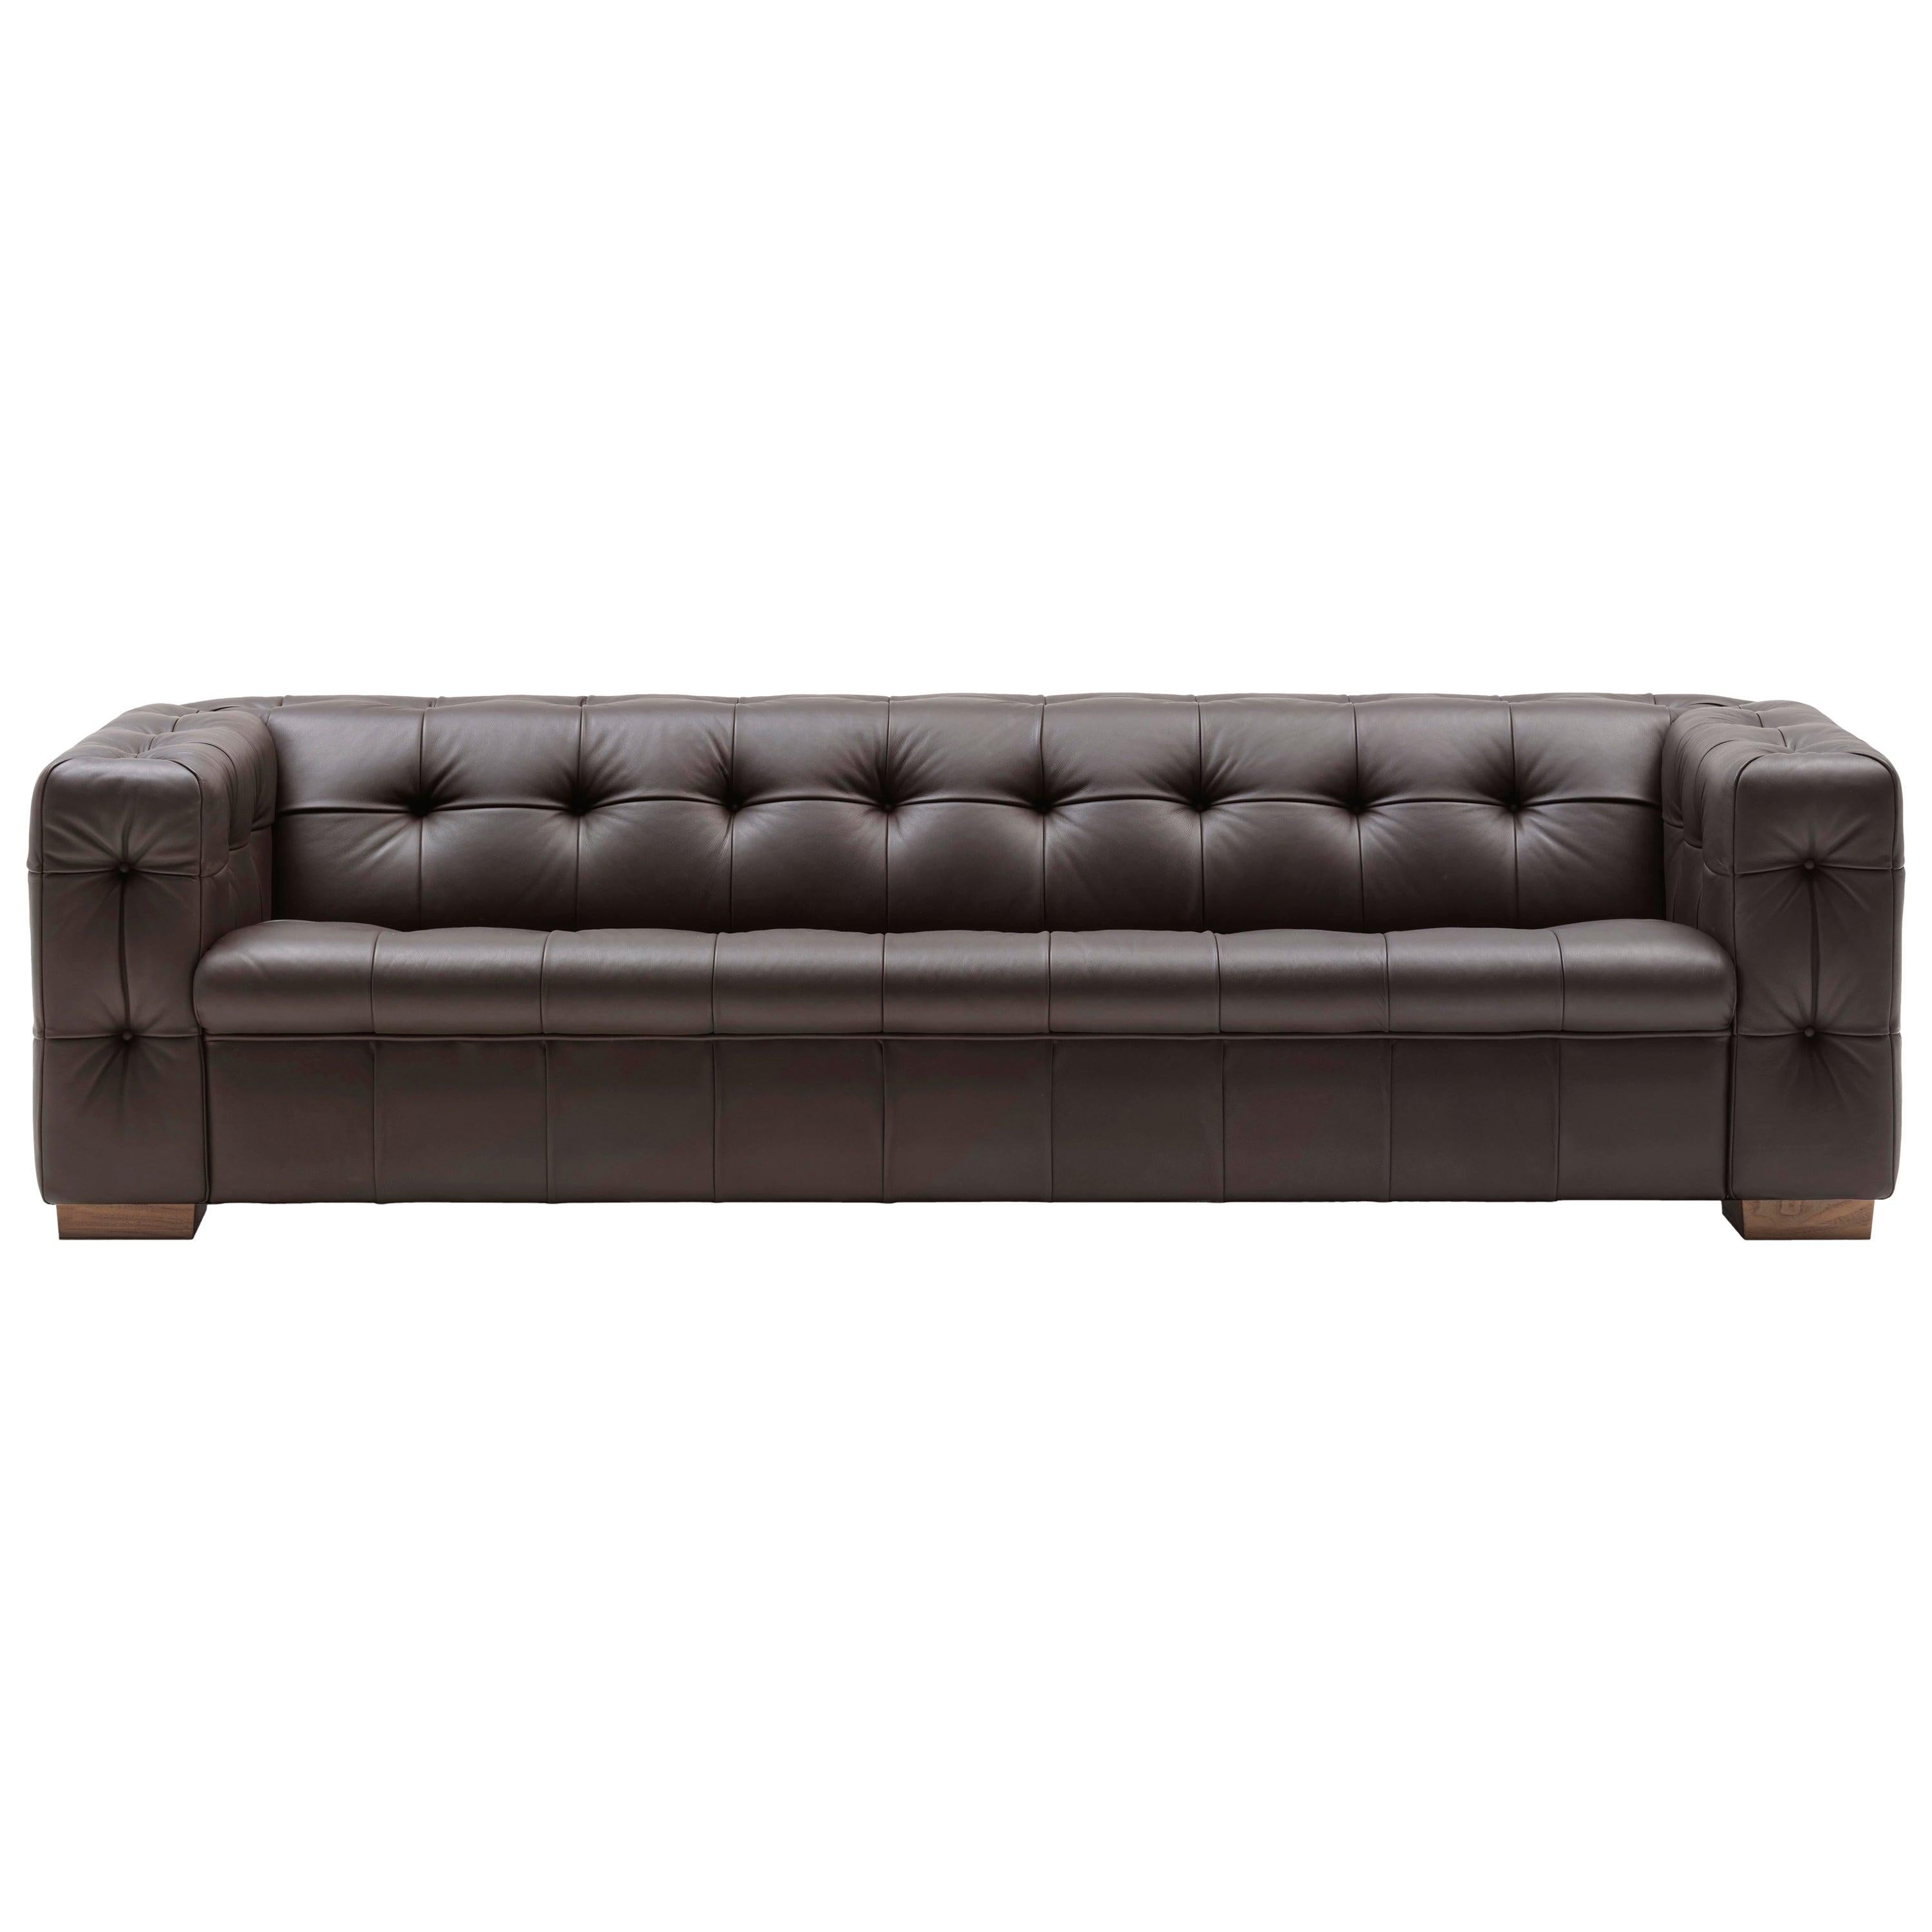 RH-306 - Grand canapé en cuir touffeté Chesterfield de Robert Haussmann